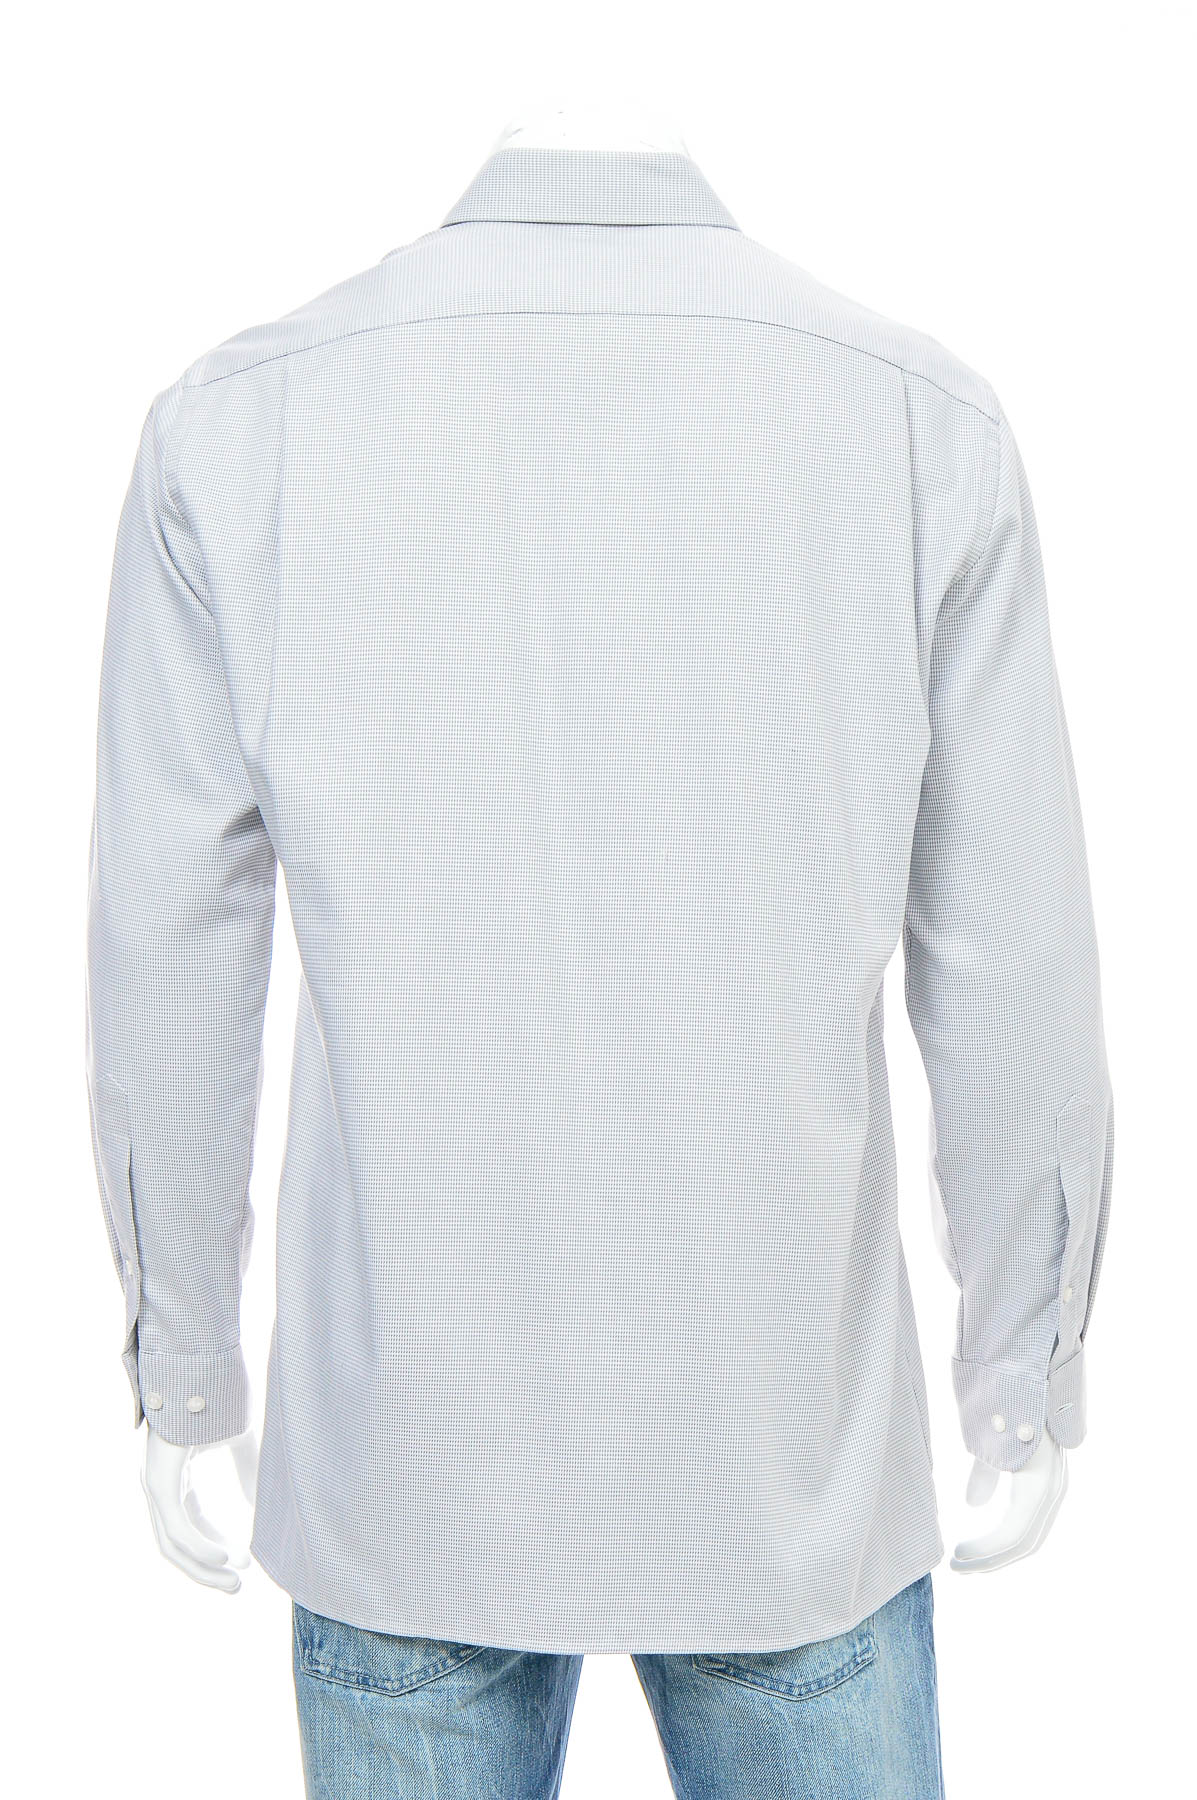 Ανδρικό πουκάμισο - Digel - 1